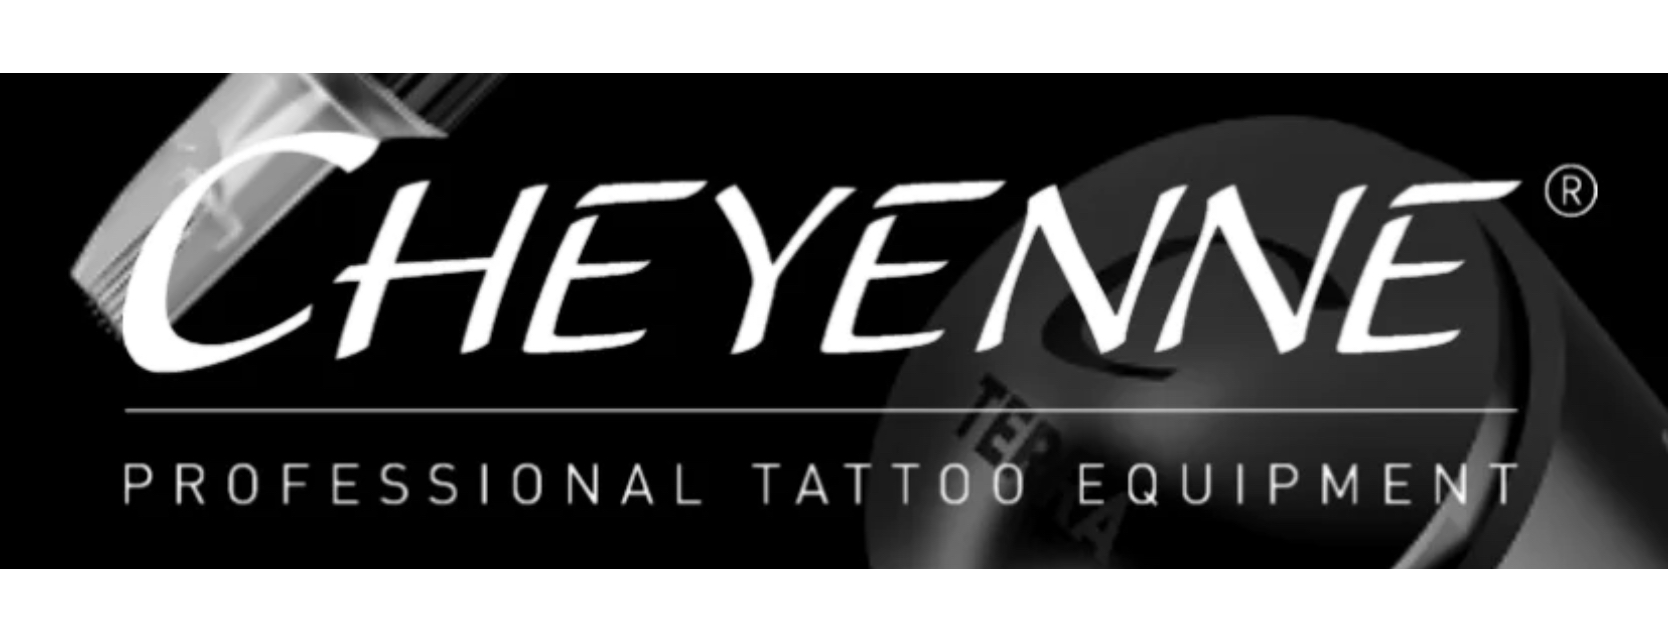 Cheyenne Hawk Spirit Black Tattoo Machine - Get Best Price from  Manufacturers & Suppliers in India